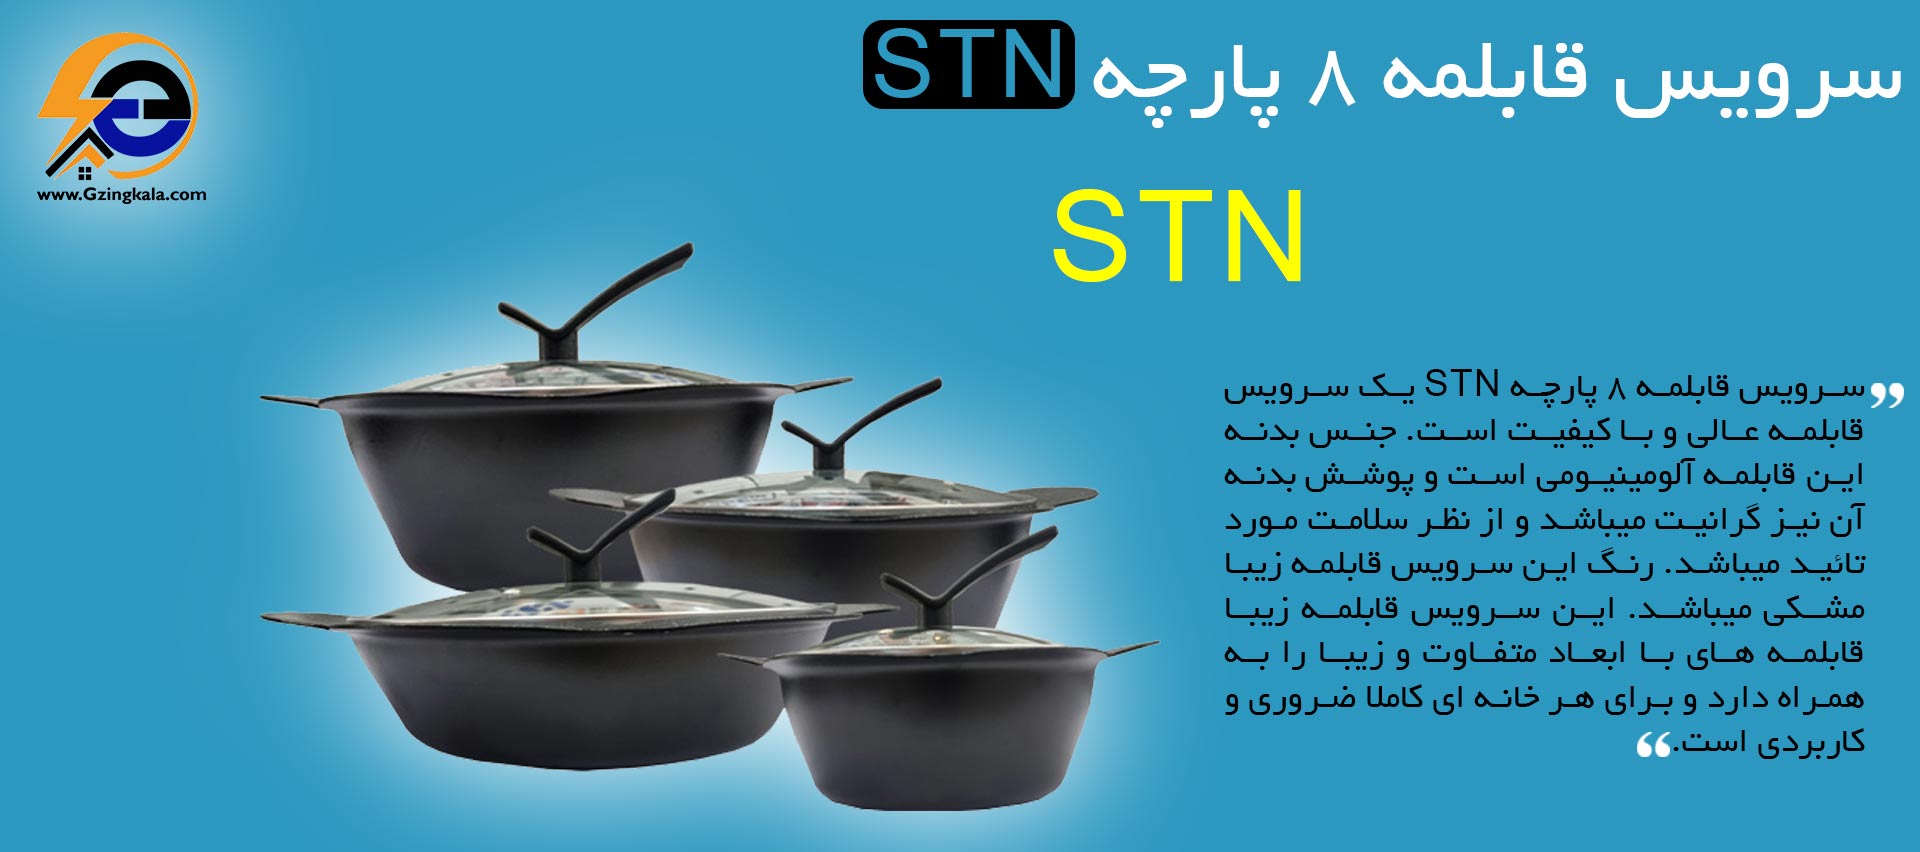 سرویس قابلمه 8 پارچه STN